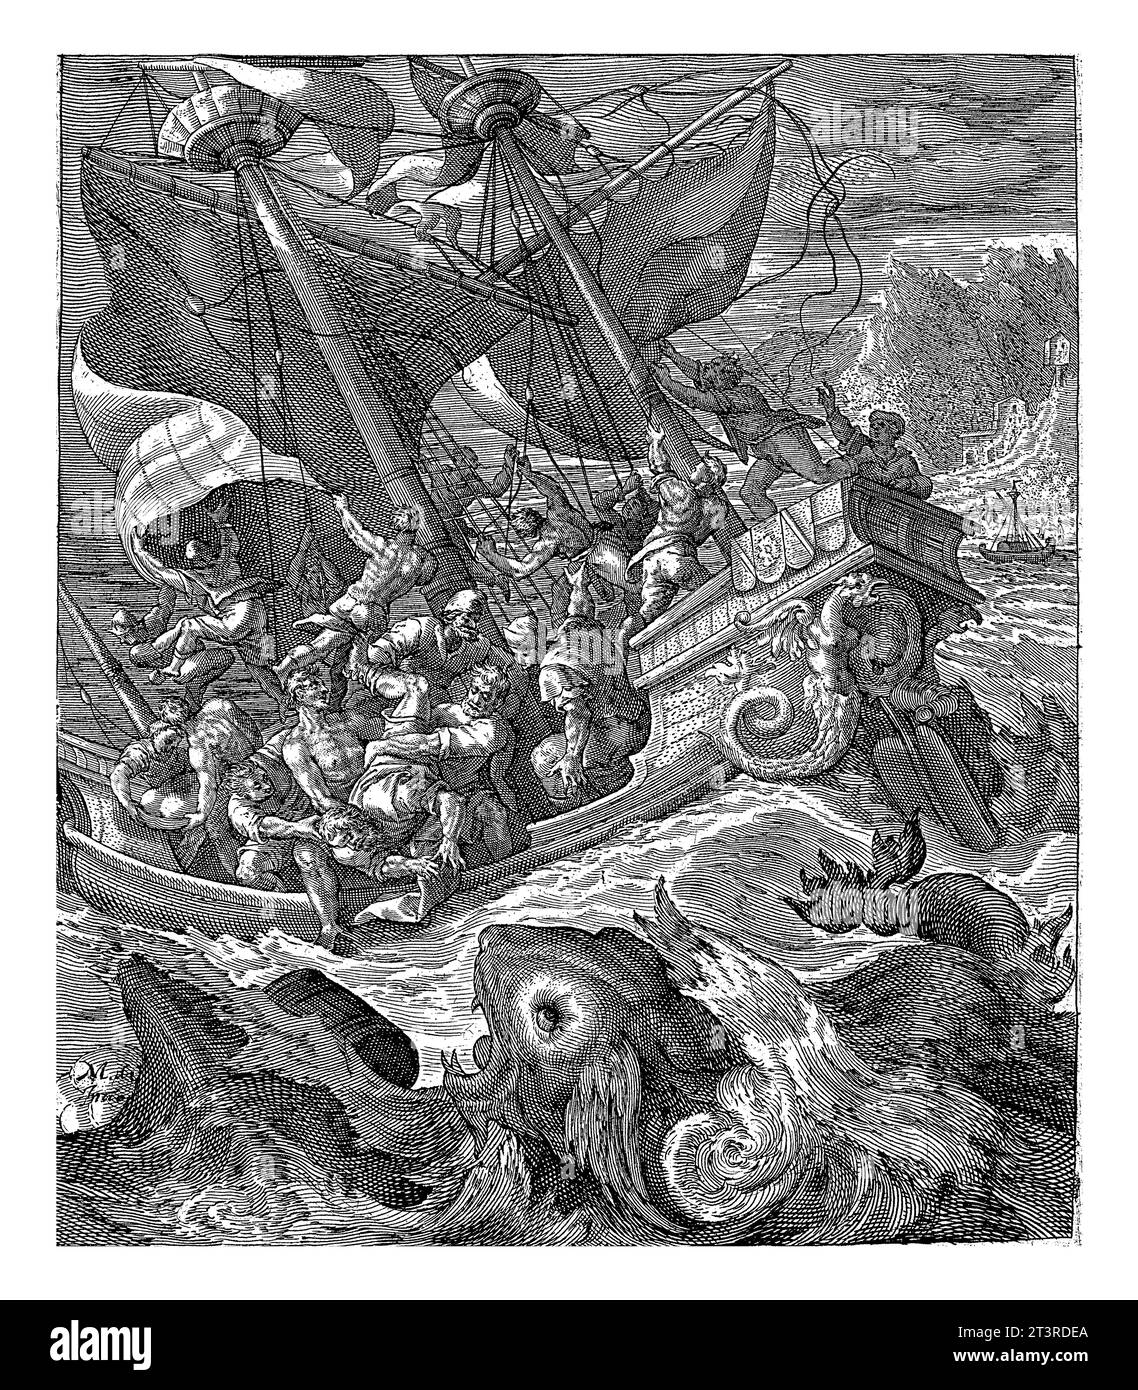 Jona est jeté par-dessus bord par les marins, Crispijn van de passe (I), après Maerten de vos, 1574 - 1637 le navire sur lequel navigue Jona est ravagé par Banque D'Images